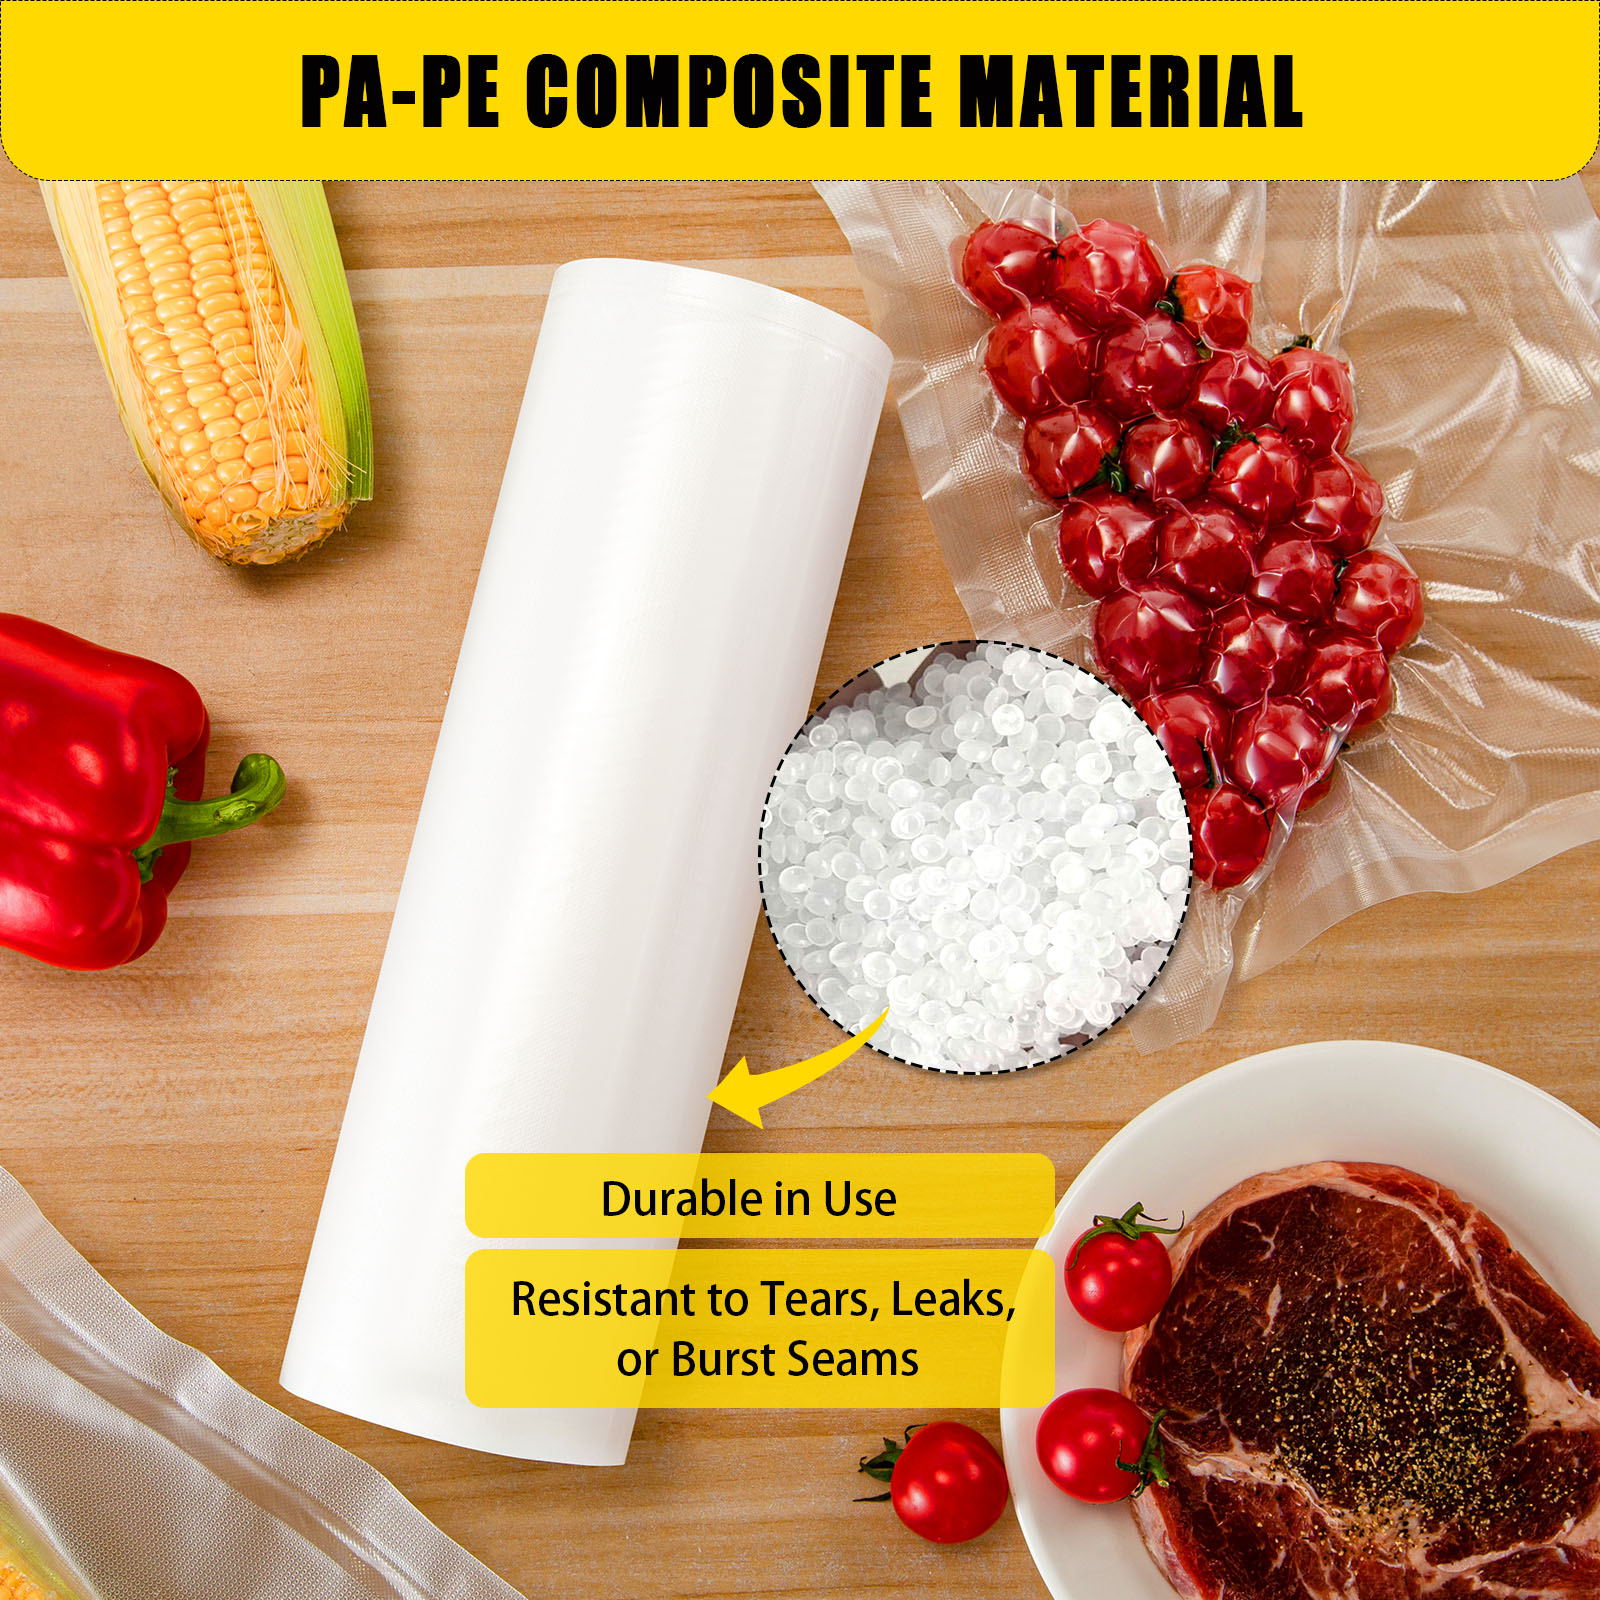 Vacuum Sealer Bags 8x12 | 400 Bags - Bulk | Pre-Cut Embossed Vacuum Bags for Food | BPA Free